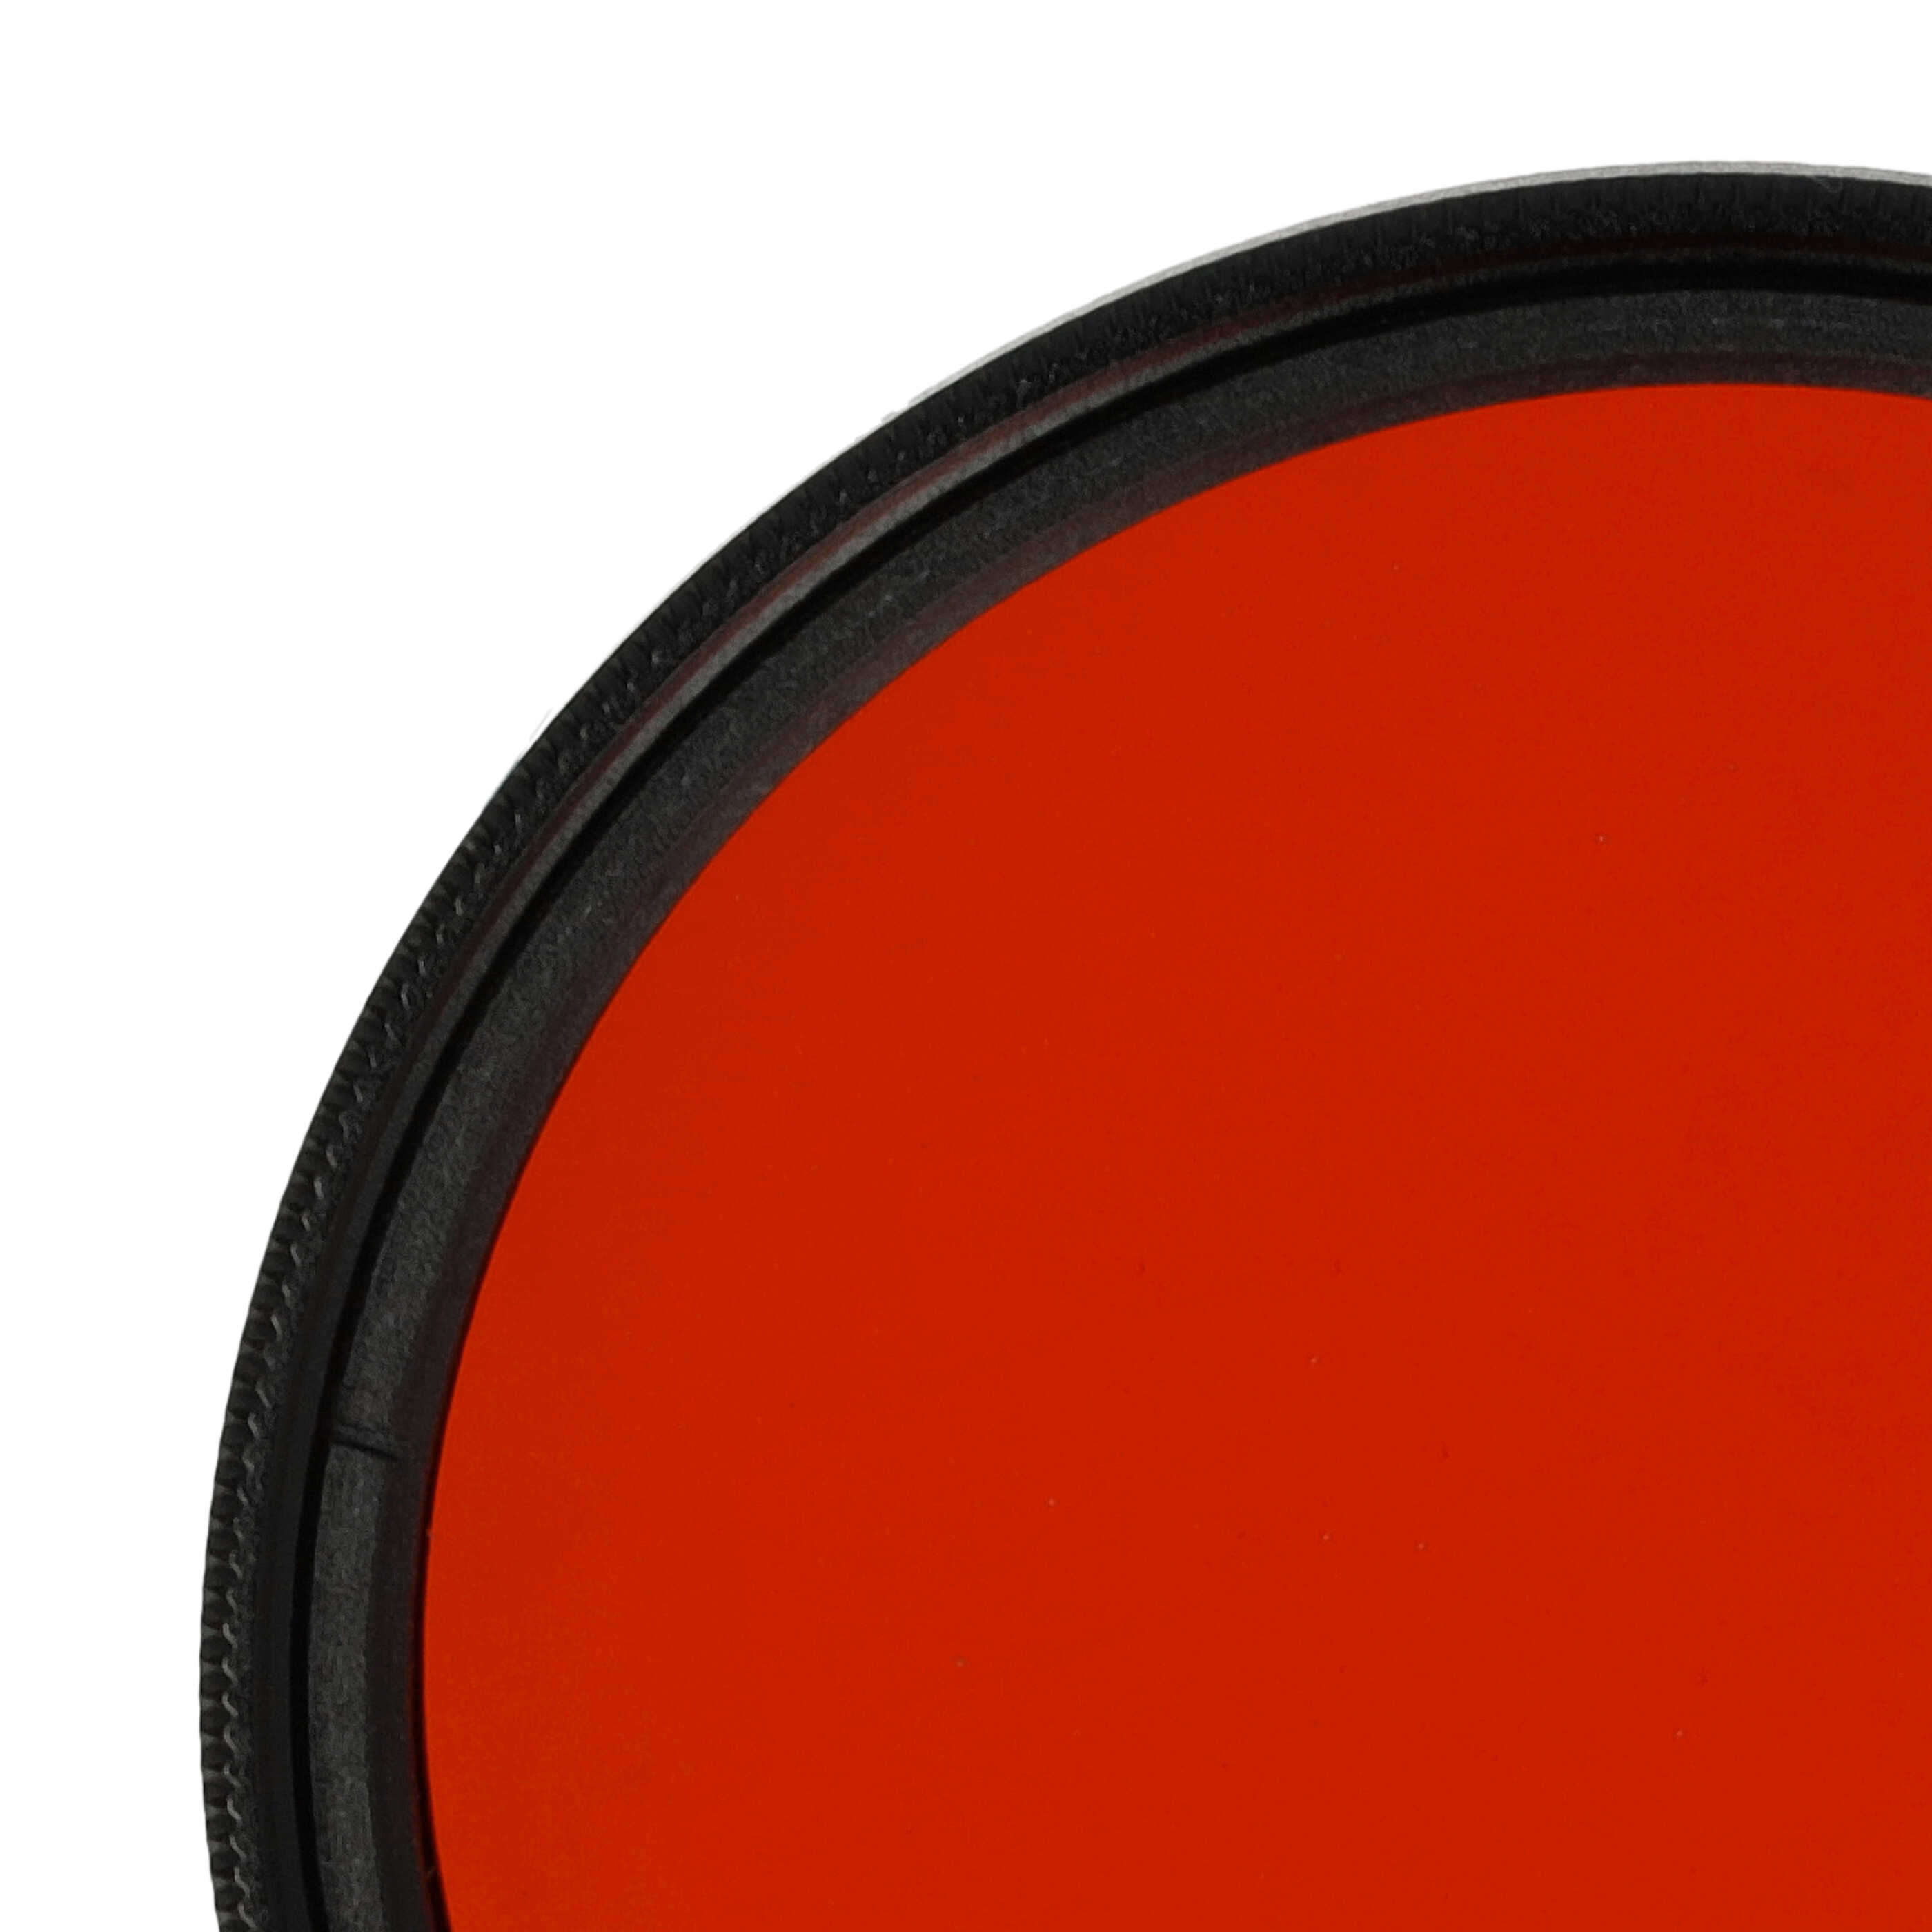 Filtre de couleur orange pour objectifs d'appareils photo de 49 mm - Filtre orange